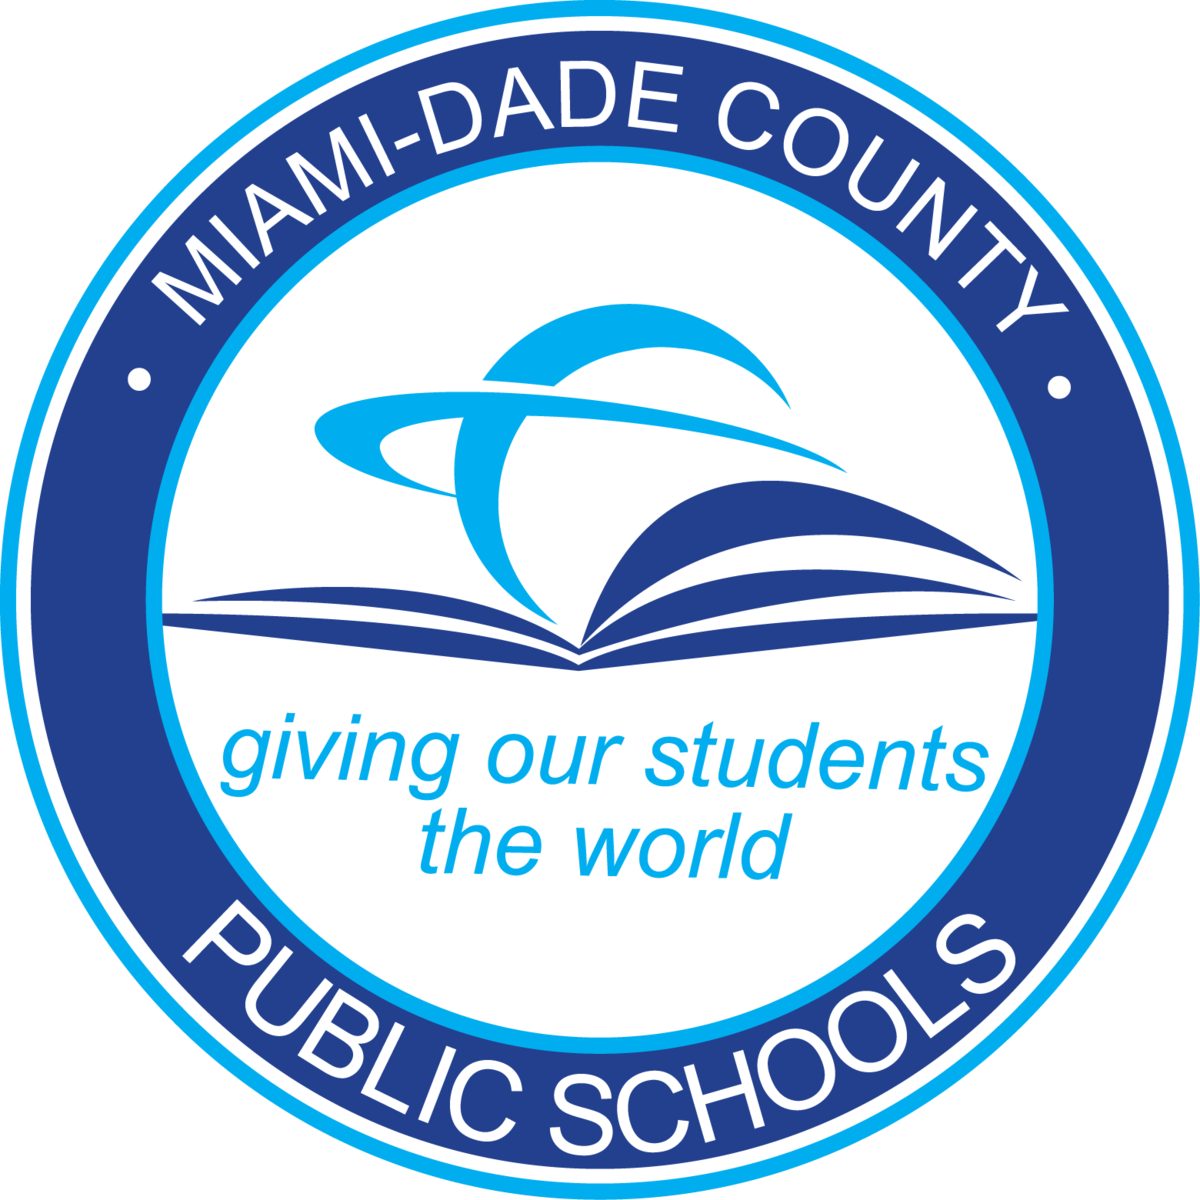 miami-dade-county-public-schools